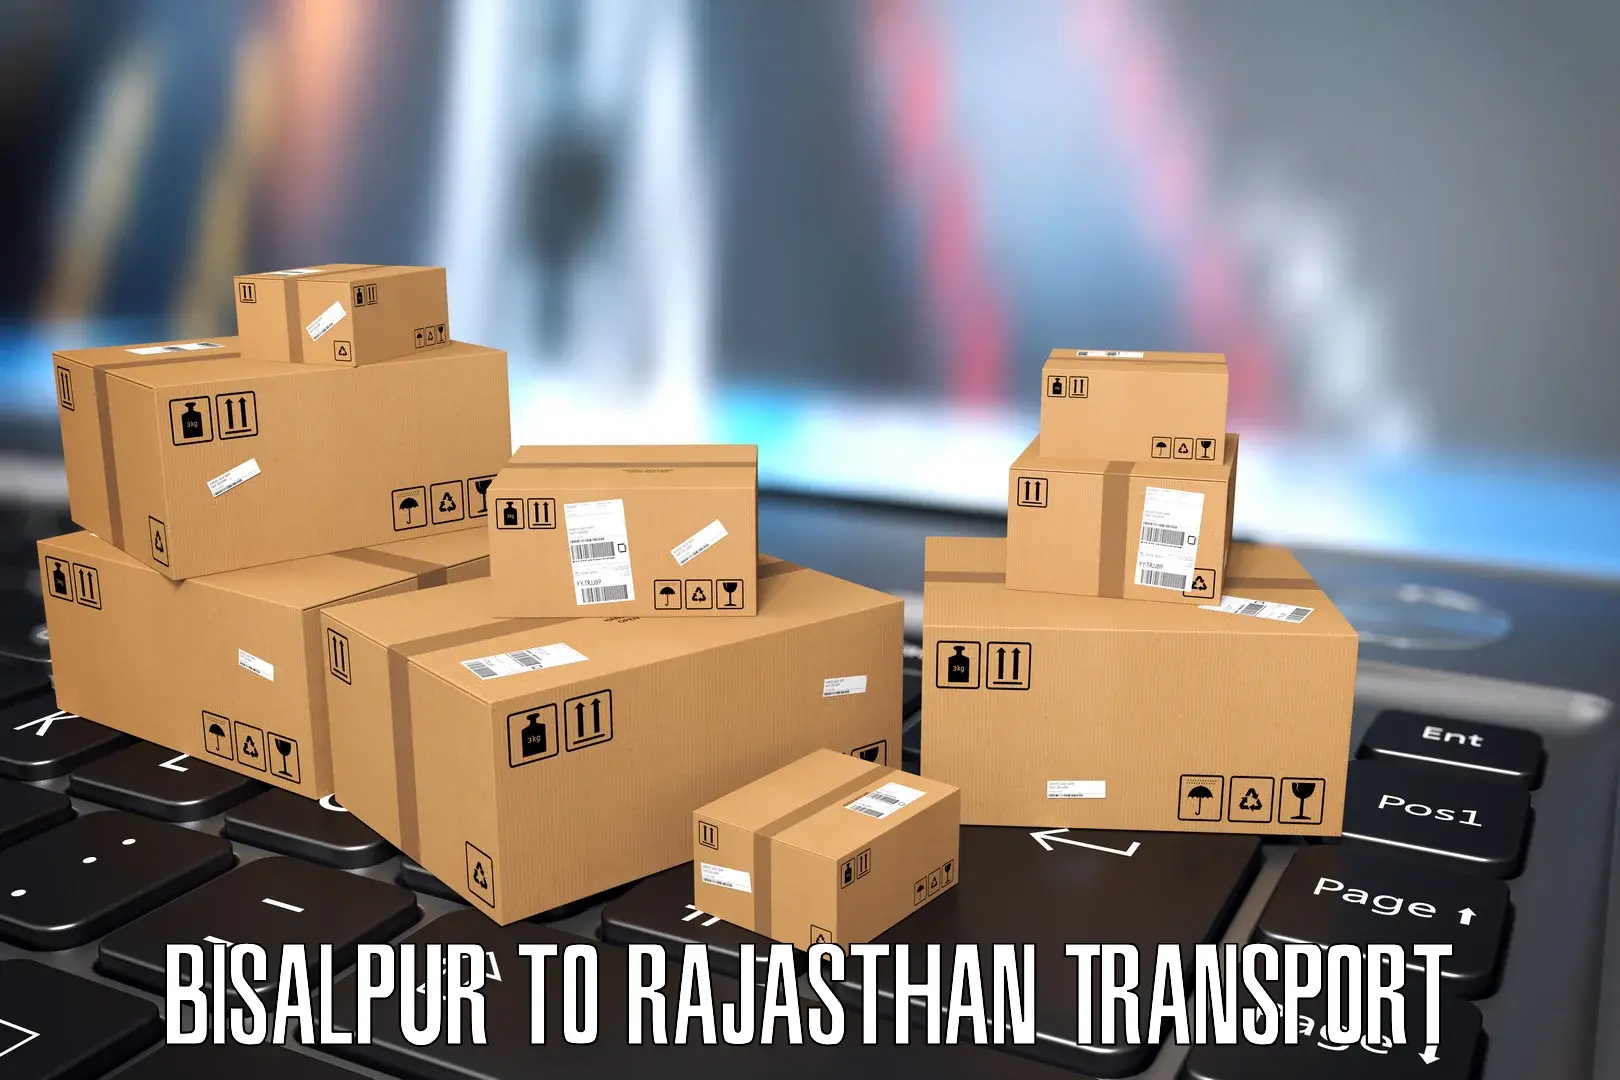 Online transport booking Bisalpur to Jaisalmer